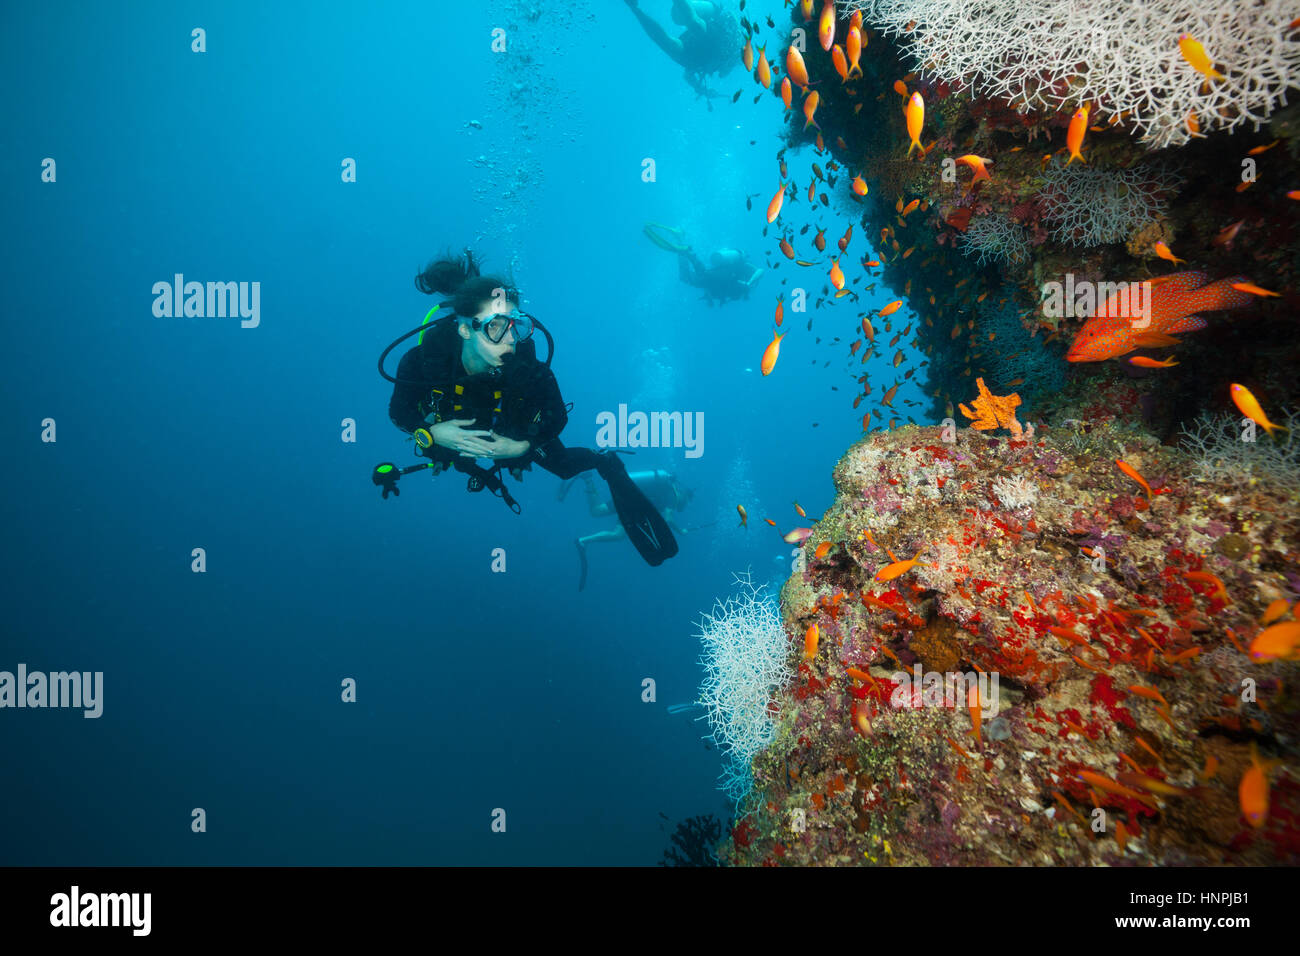 Junge Frau Taucher erforschen Korallenriffe, Atolle der Malediven, Indischer Ozean. Viel schöne farbige kleine Fische und Weichkorallen im Vordergrund Stockfoto